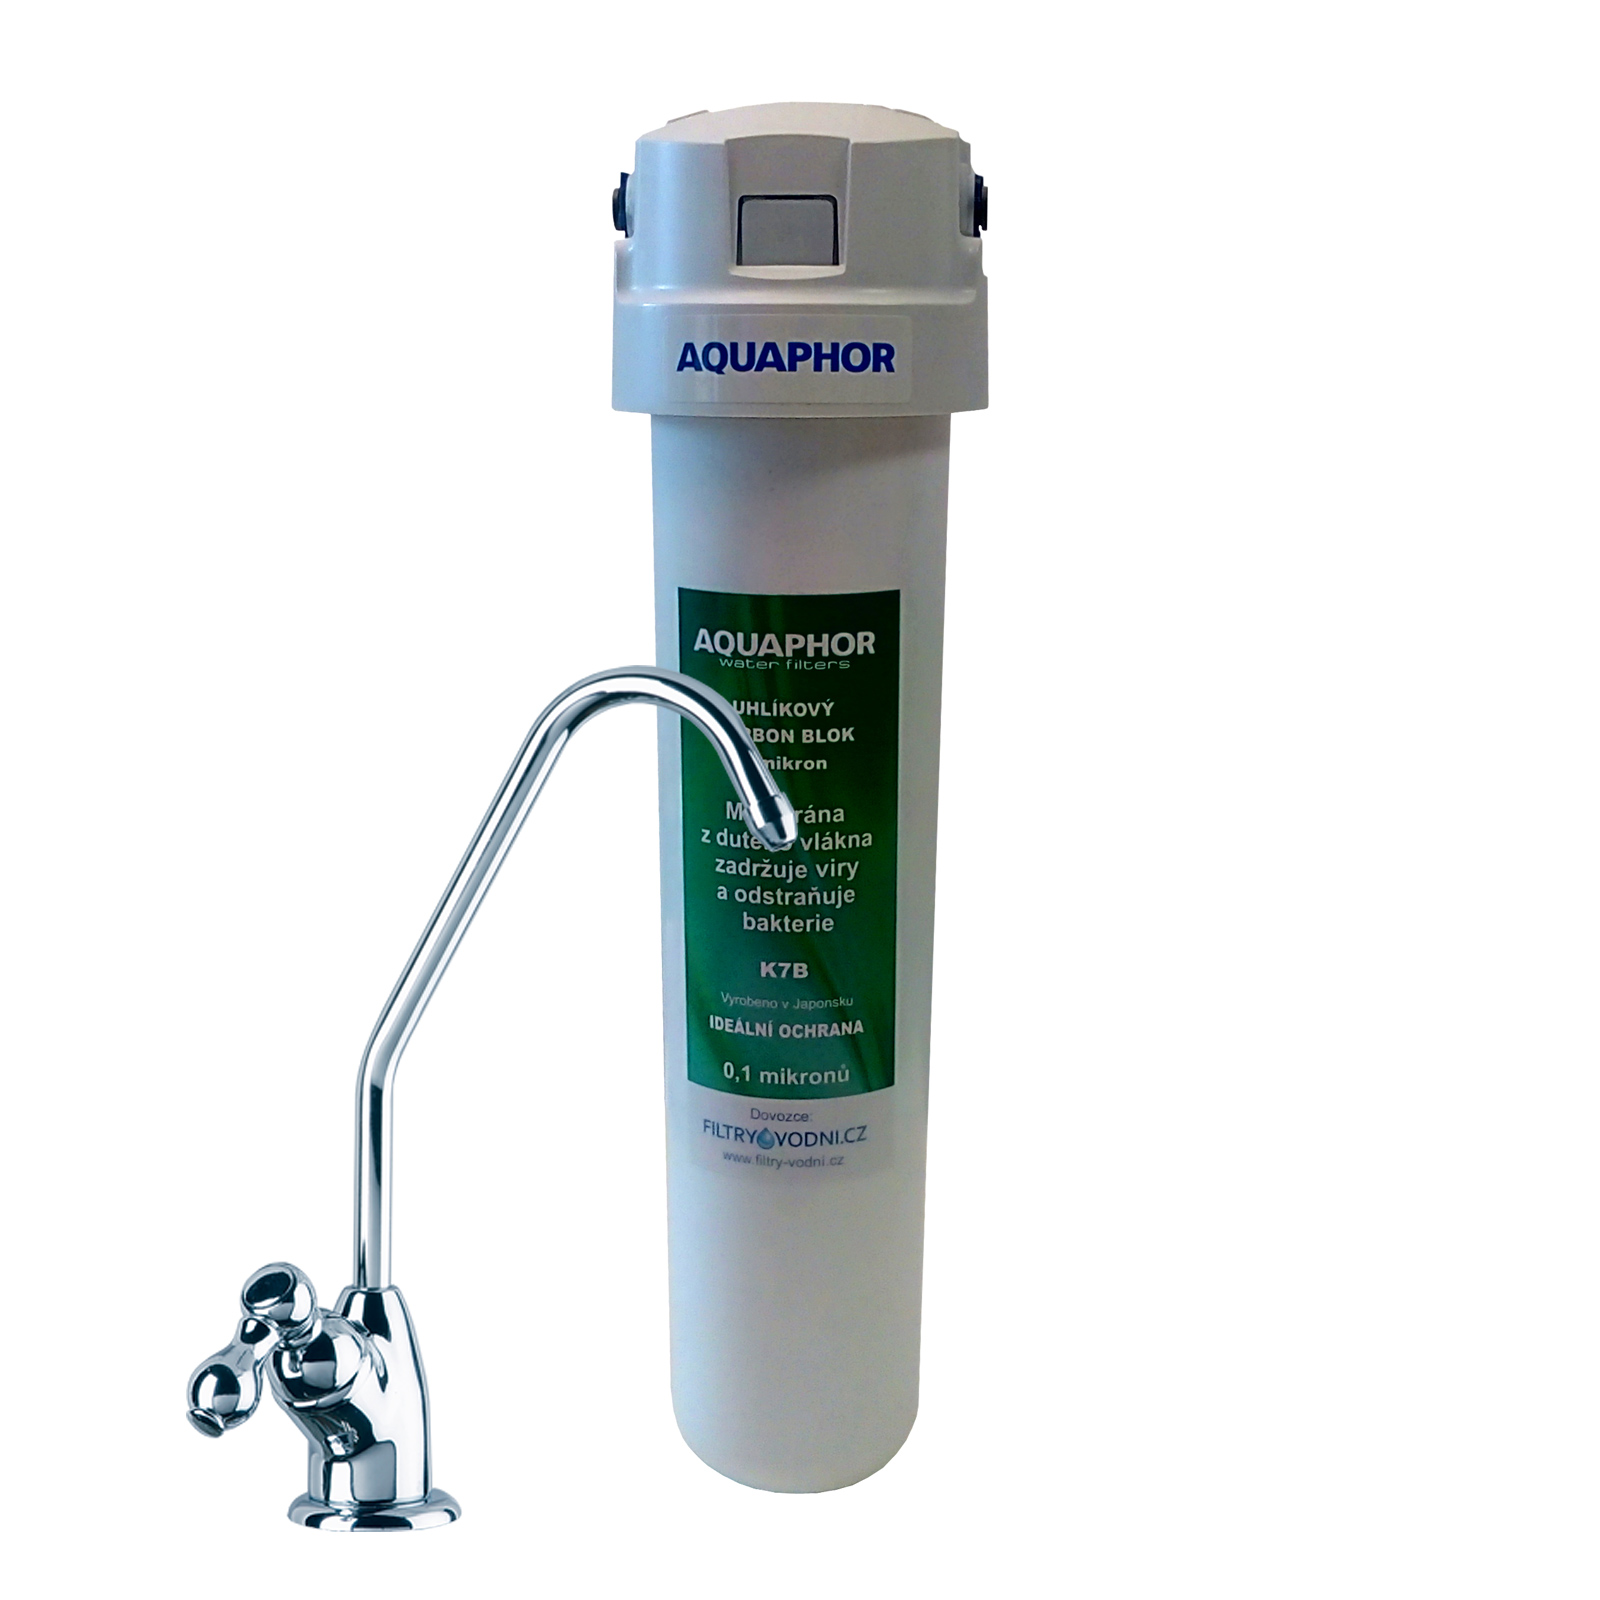 Аквафор очищает воду. Фильтр для воды Аквафор DW-40. Аквафор фильтры под мойку Аквафор. Фильтр Аквафор 1,25. Аквафор фильтры +для воды под кран.